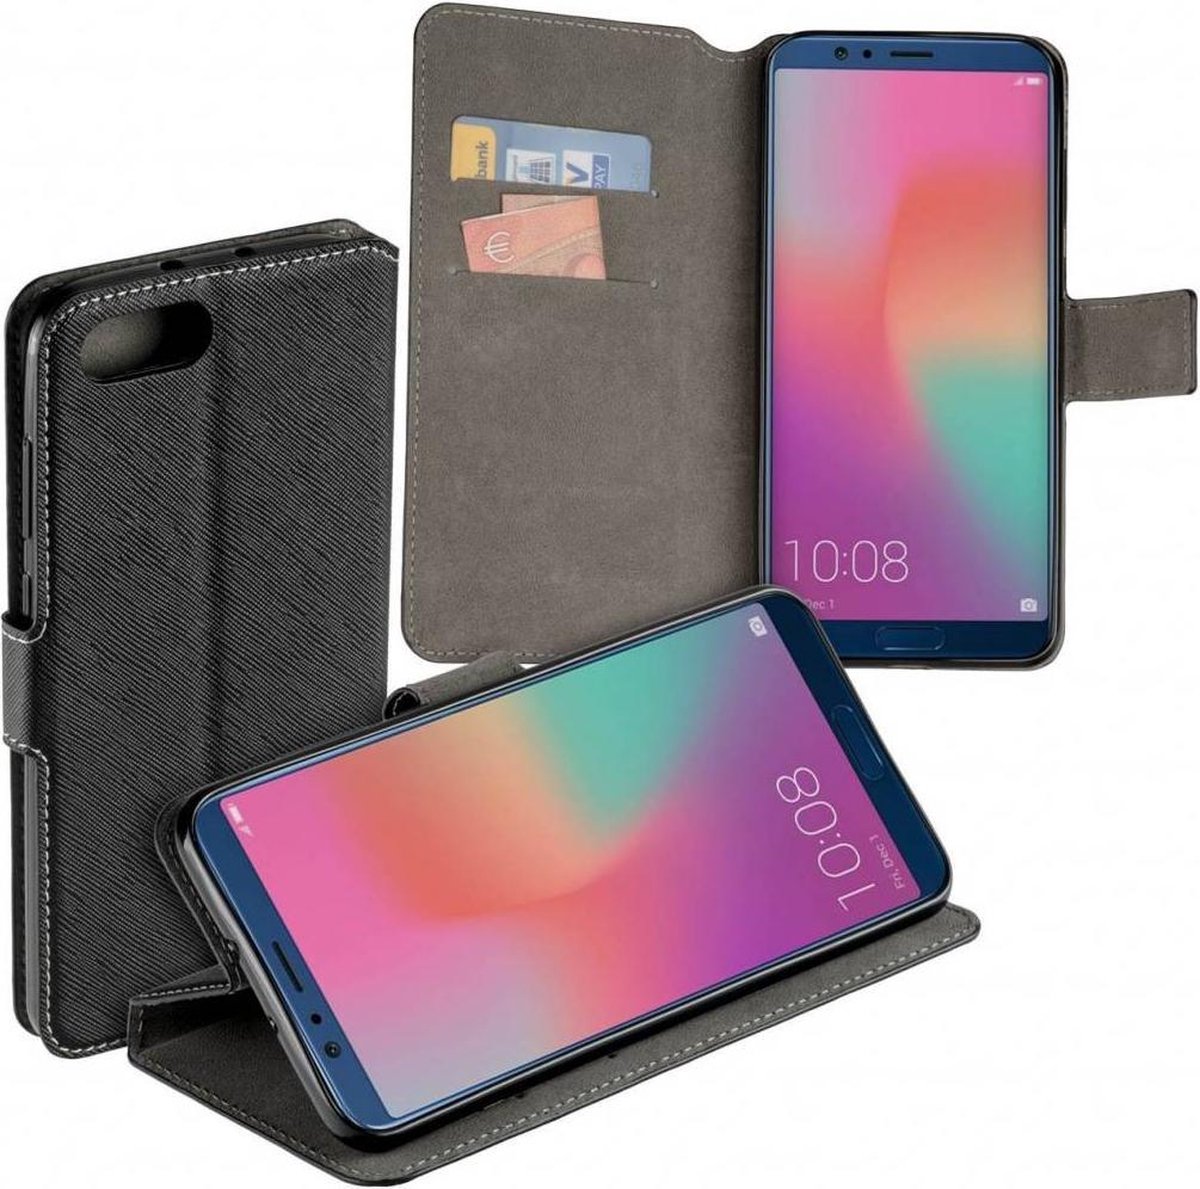 MP case zwart book case style voor Huawei Honor View 10 wallet case hoesje